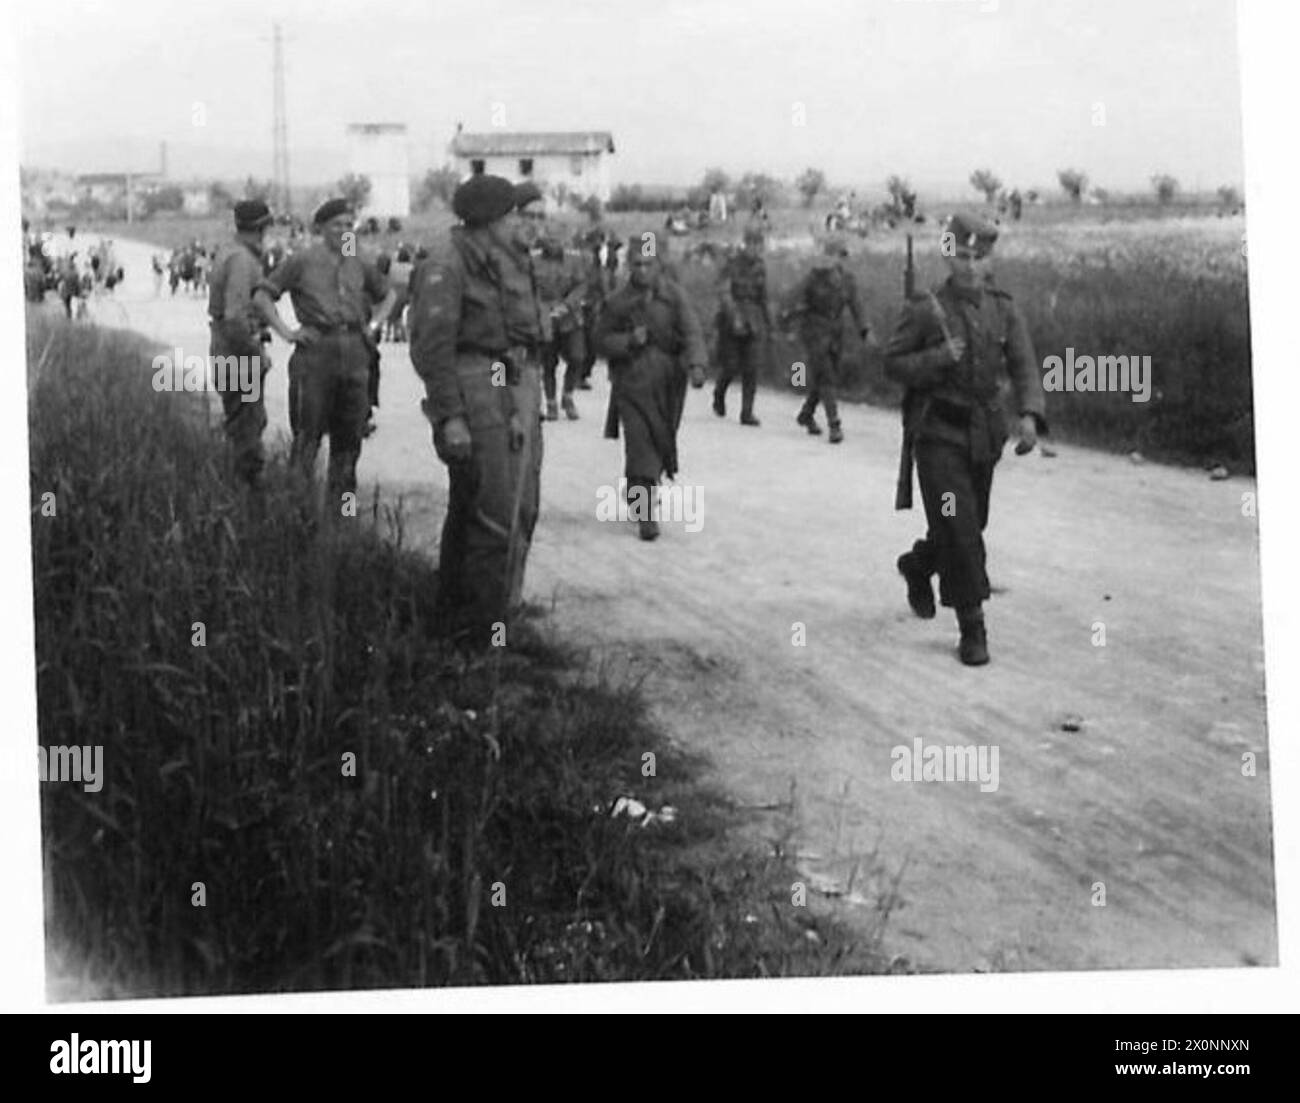 LES CHETNIKS SE RENDENT - les troupes Chetnik se déplacent dans leur zone de liège. Négatif photographique, Armée britannique Banque D'Images